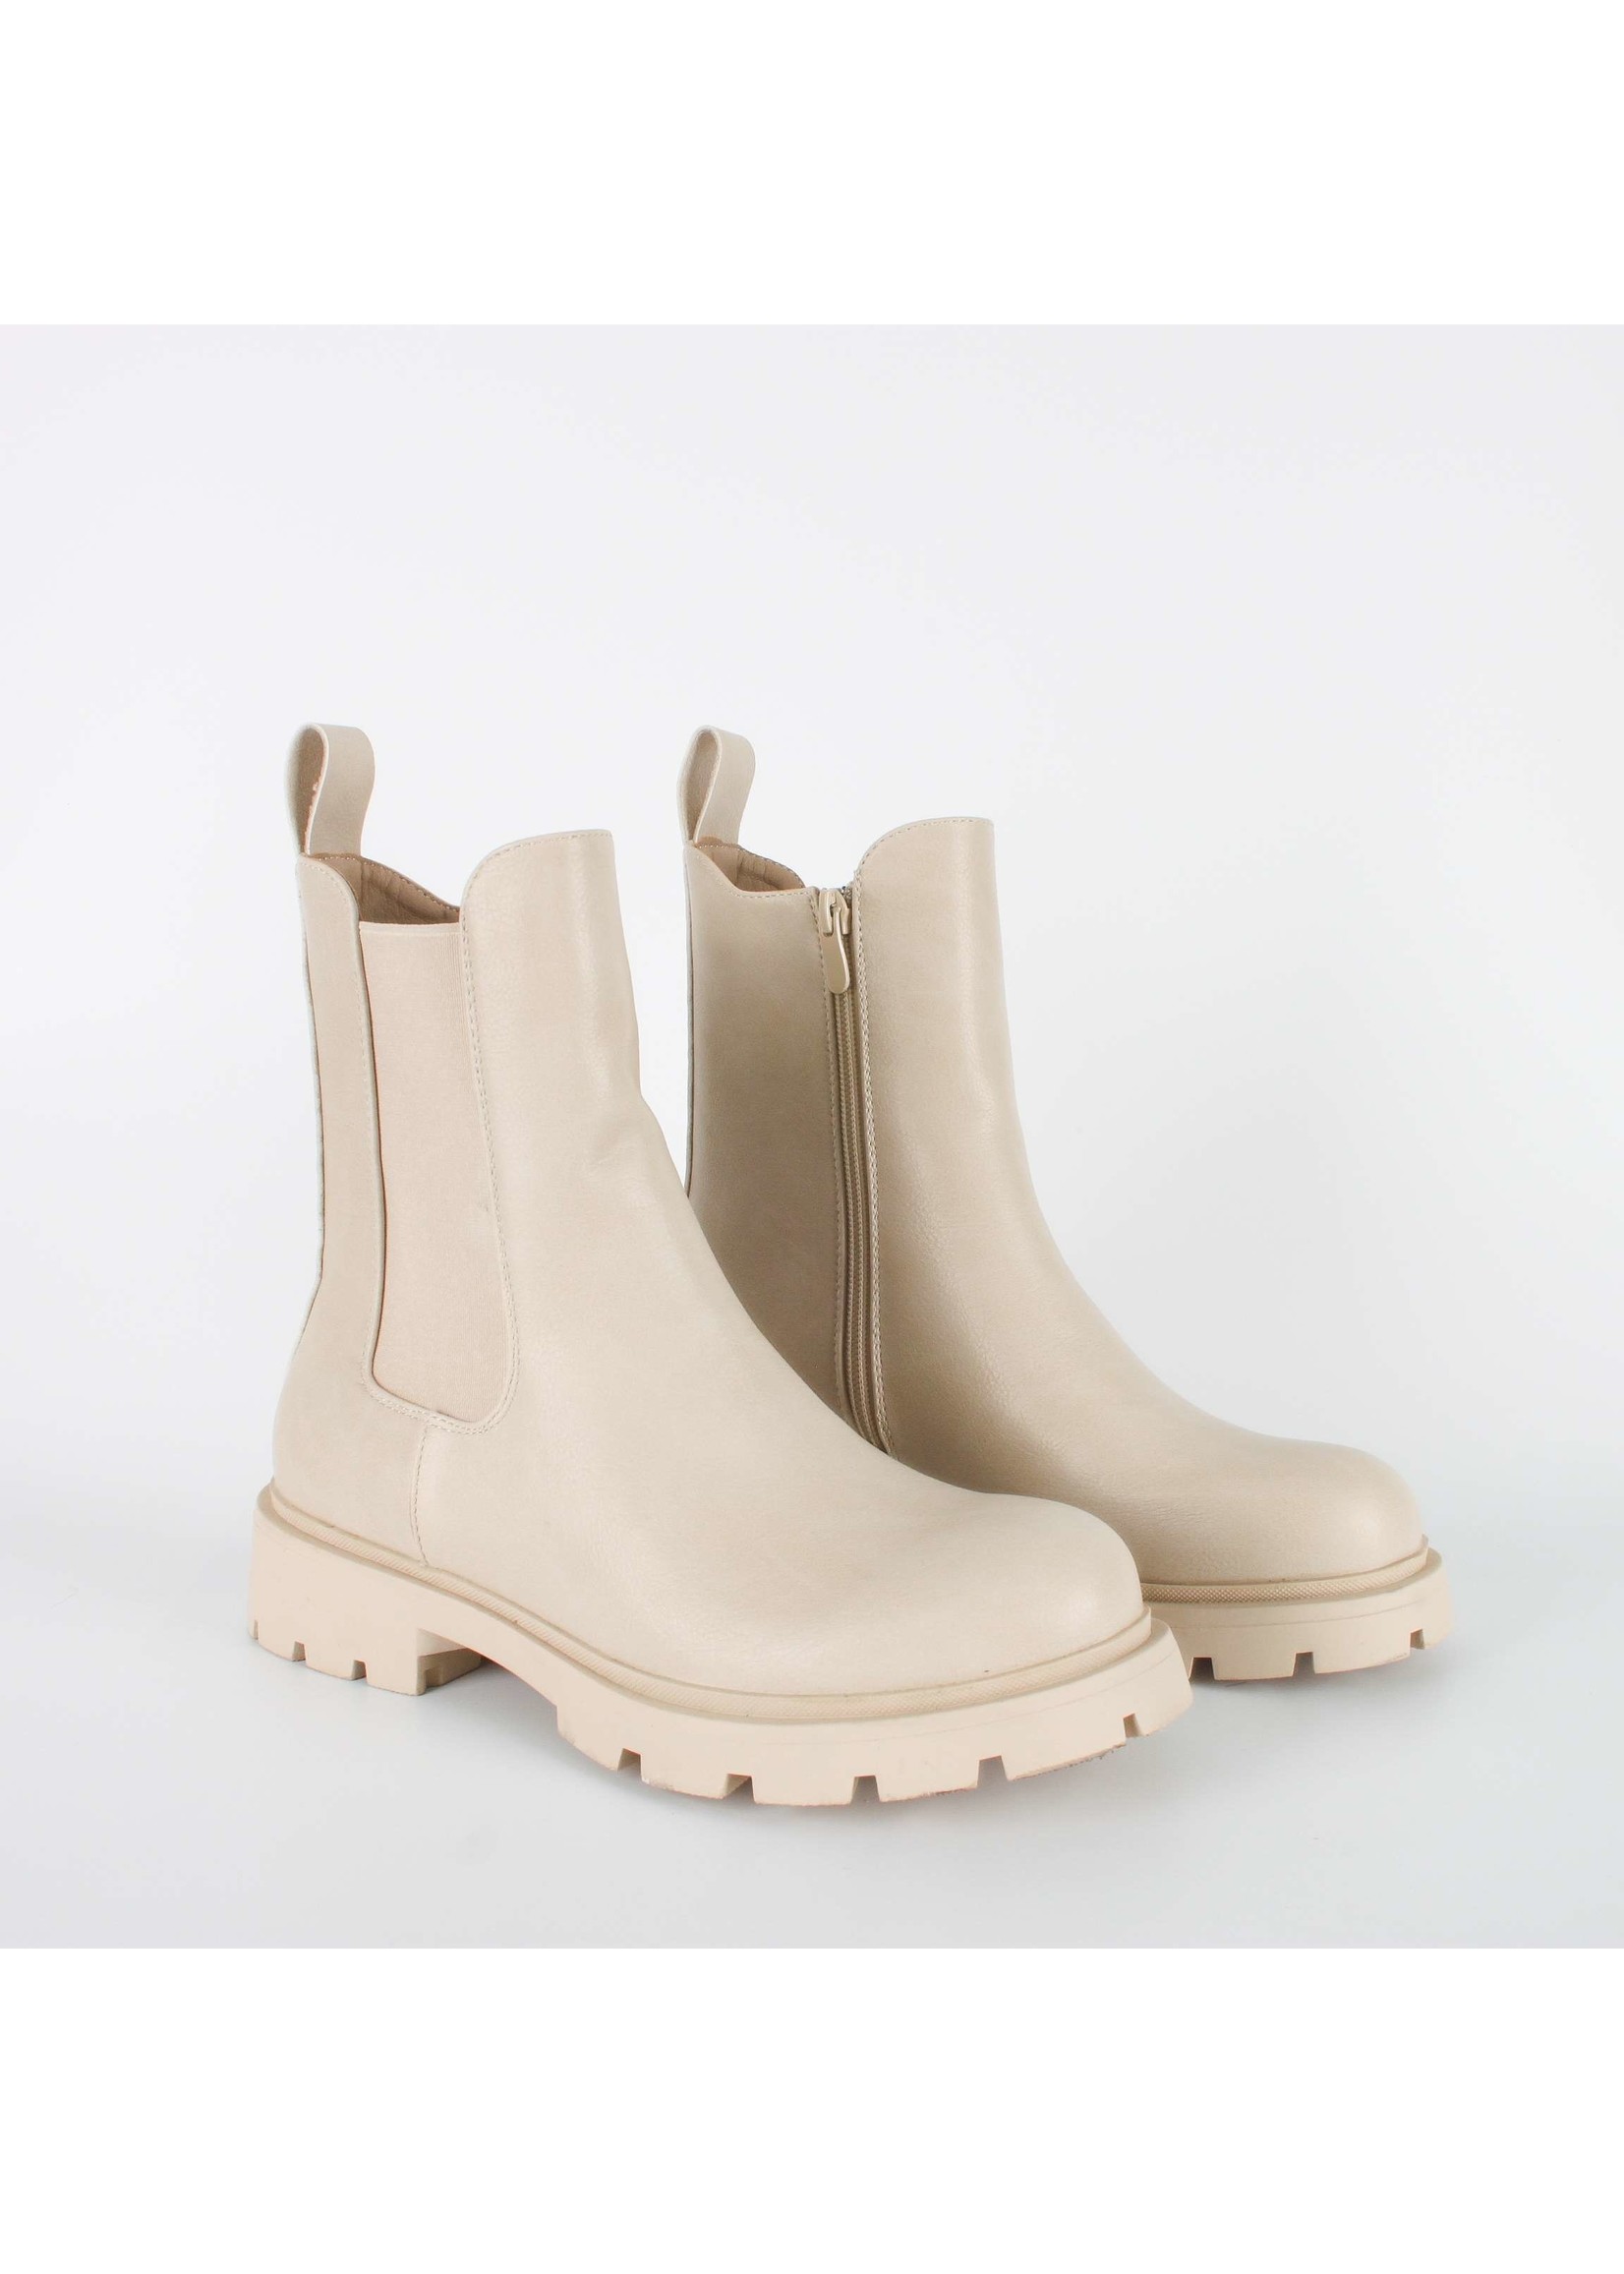 Trendy beige boots